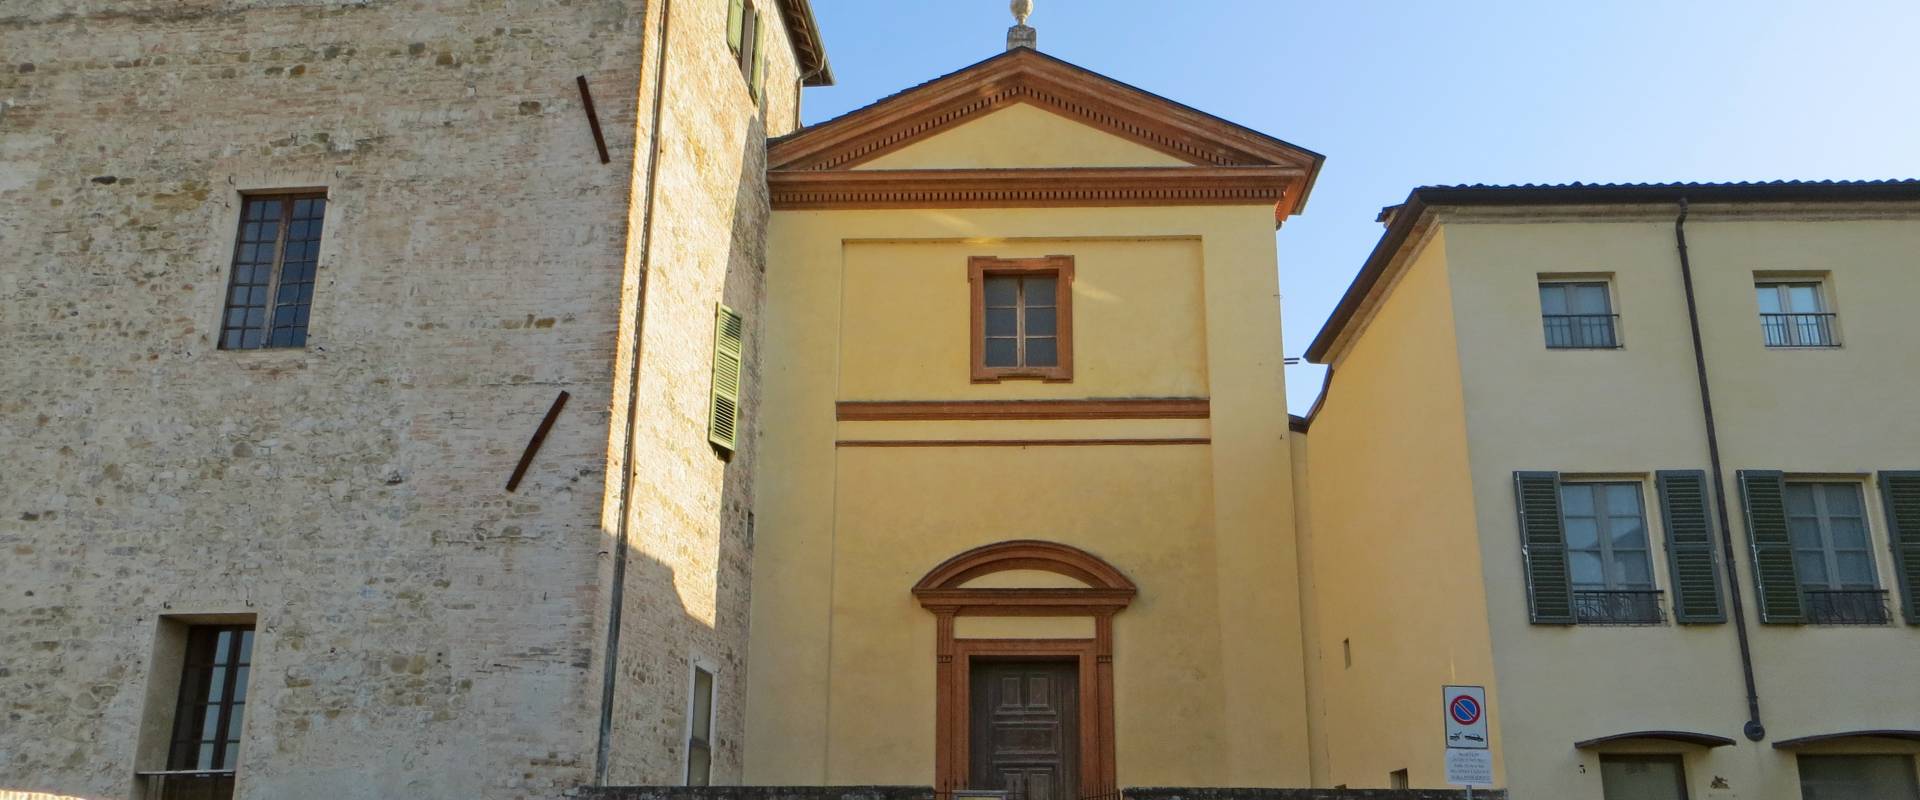 Rocca Sanvitale (Sala Baganza) - oratorio dell'Assunta 2019-06-25 foto di Parma198